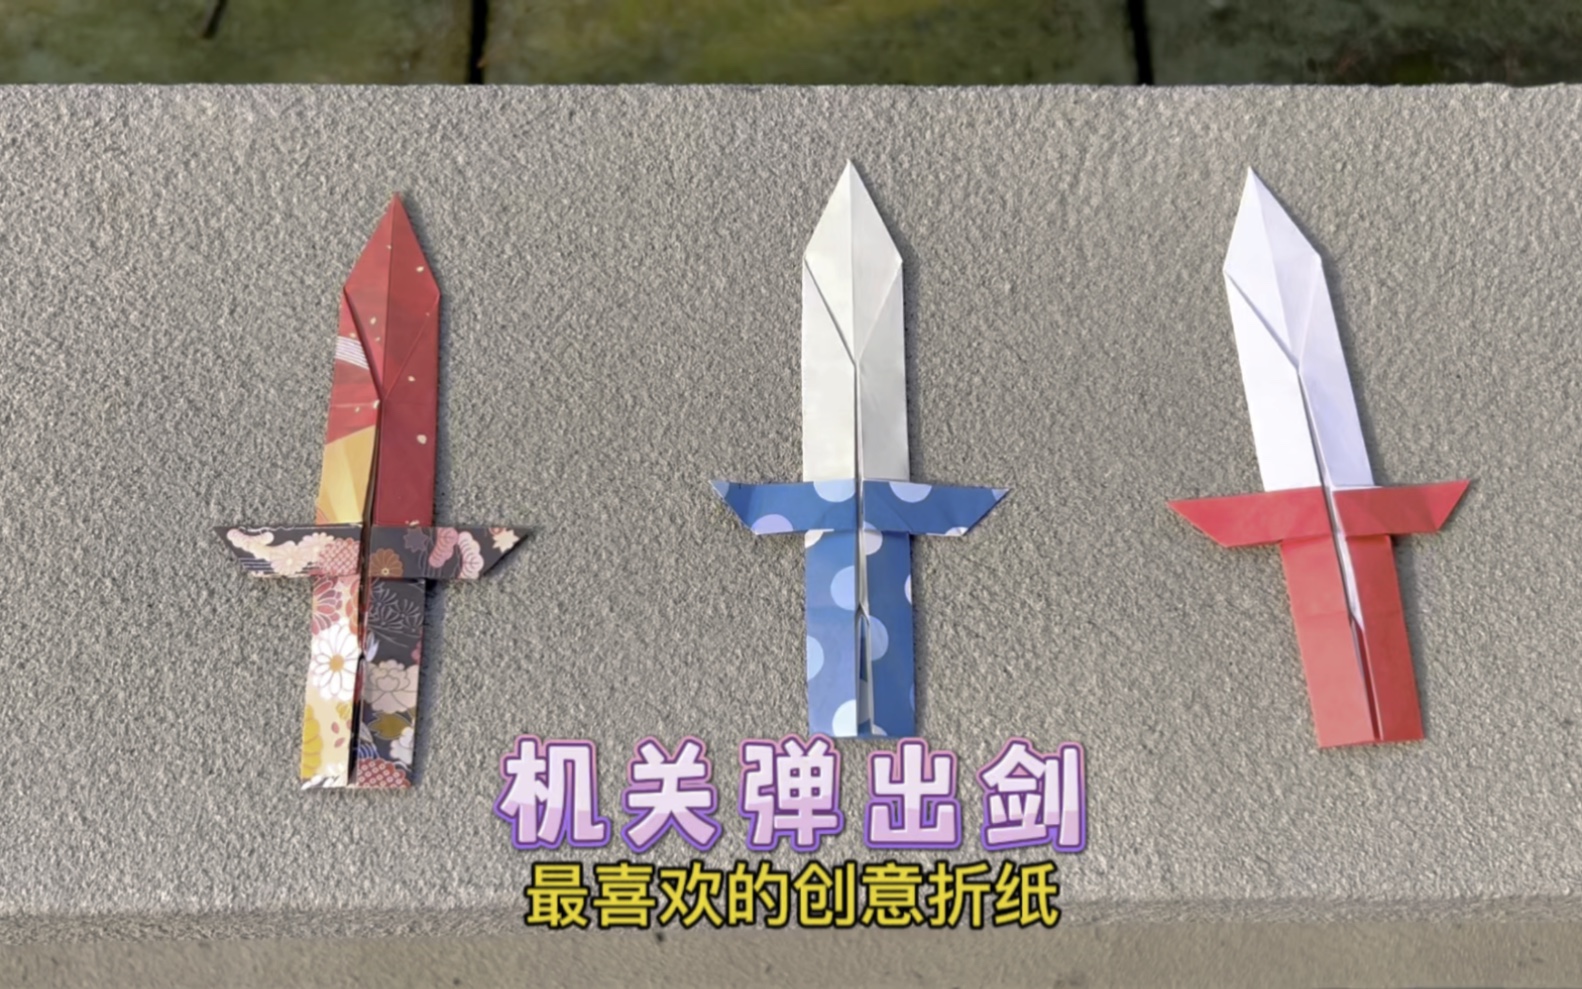 【创意折纸】带机关的弹出剑!竟然只用一张纸就能折!